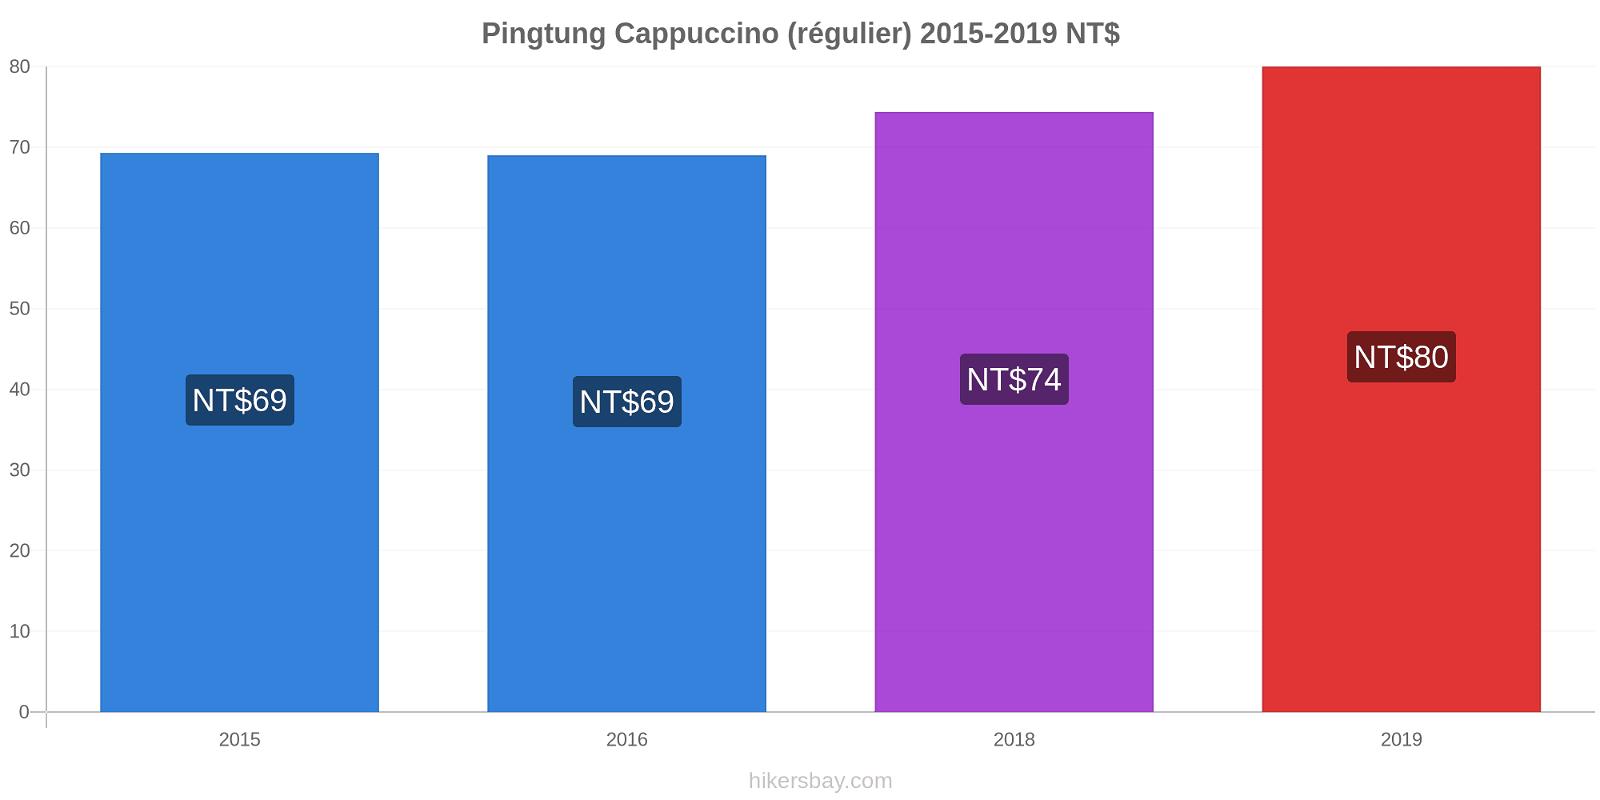 Pingtung changements de prix Cappuccino (régulier) hikersbay.com